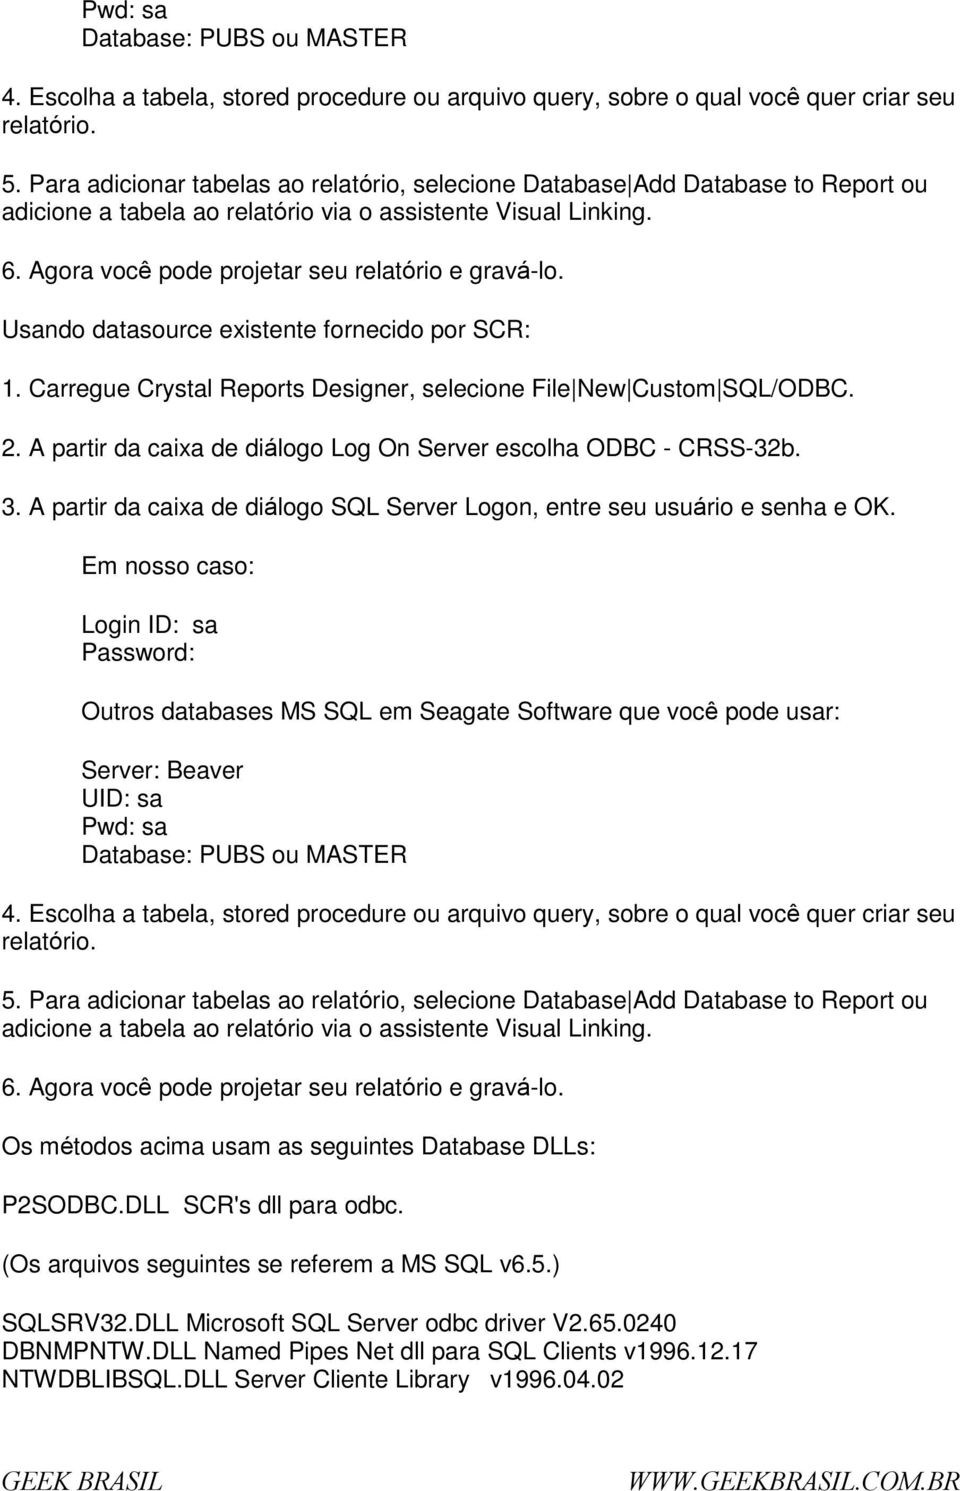 Usand datasurce existente frnecid pr SCR: 1. Carregue Crystal Reprts Designer, selecine File New Custm SQL/ODBC. 2. A partir da caixa de diálg Lg On Server esclha ODBC - CRSS-32b. 3.